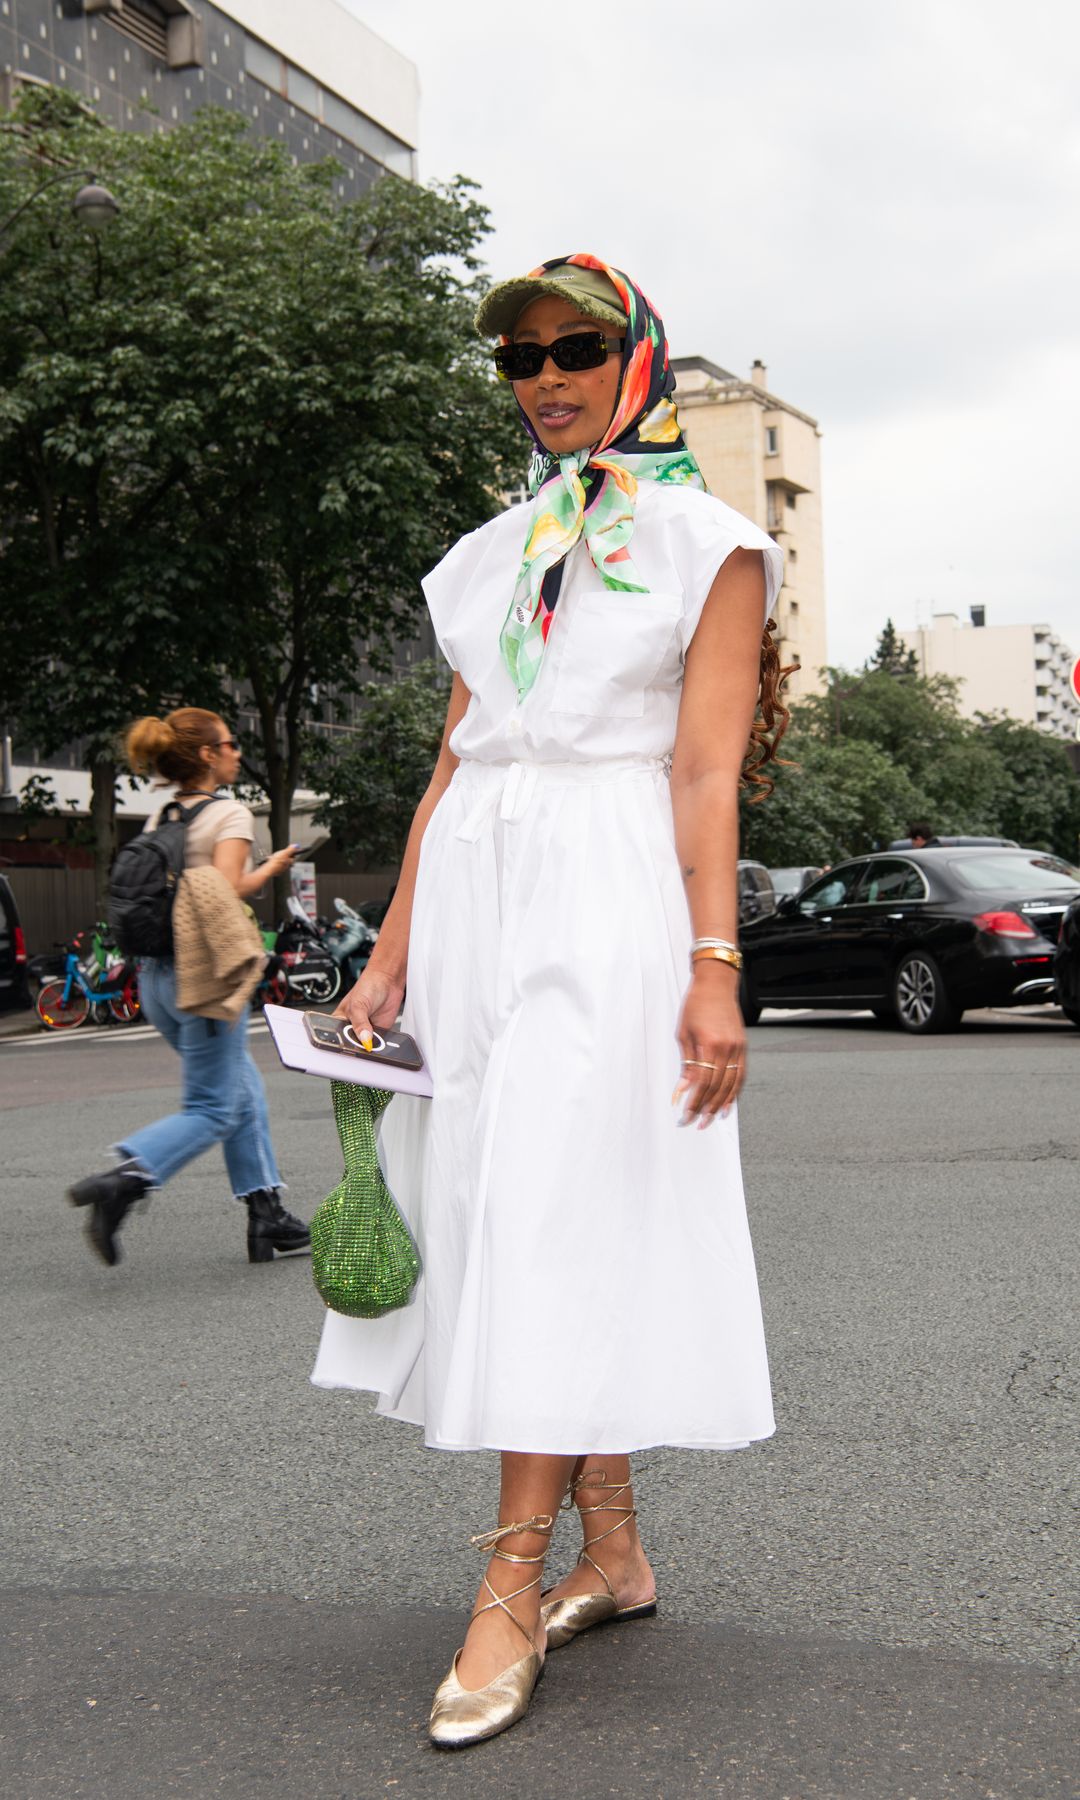  vestido blanco, mini bolso verde con lentejuelas, gorra con pañuelo y gafas de sol negras